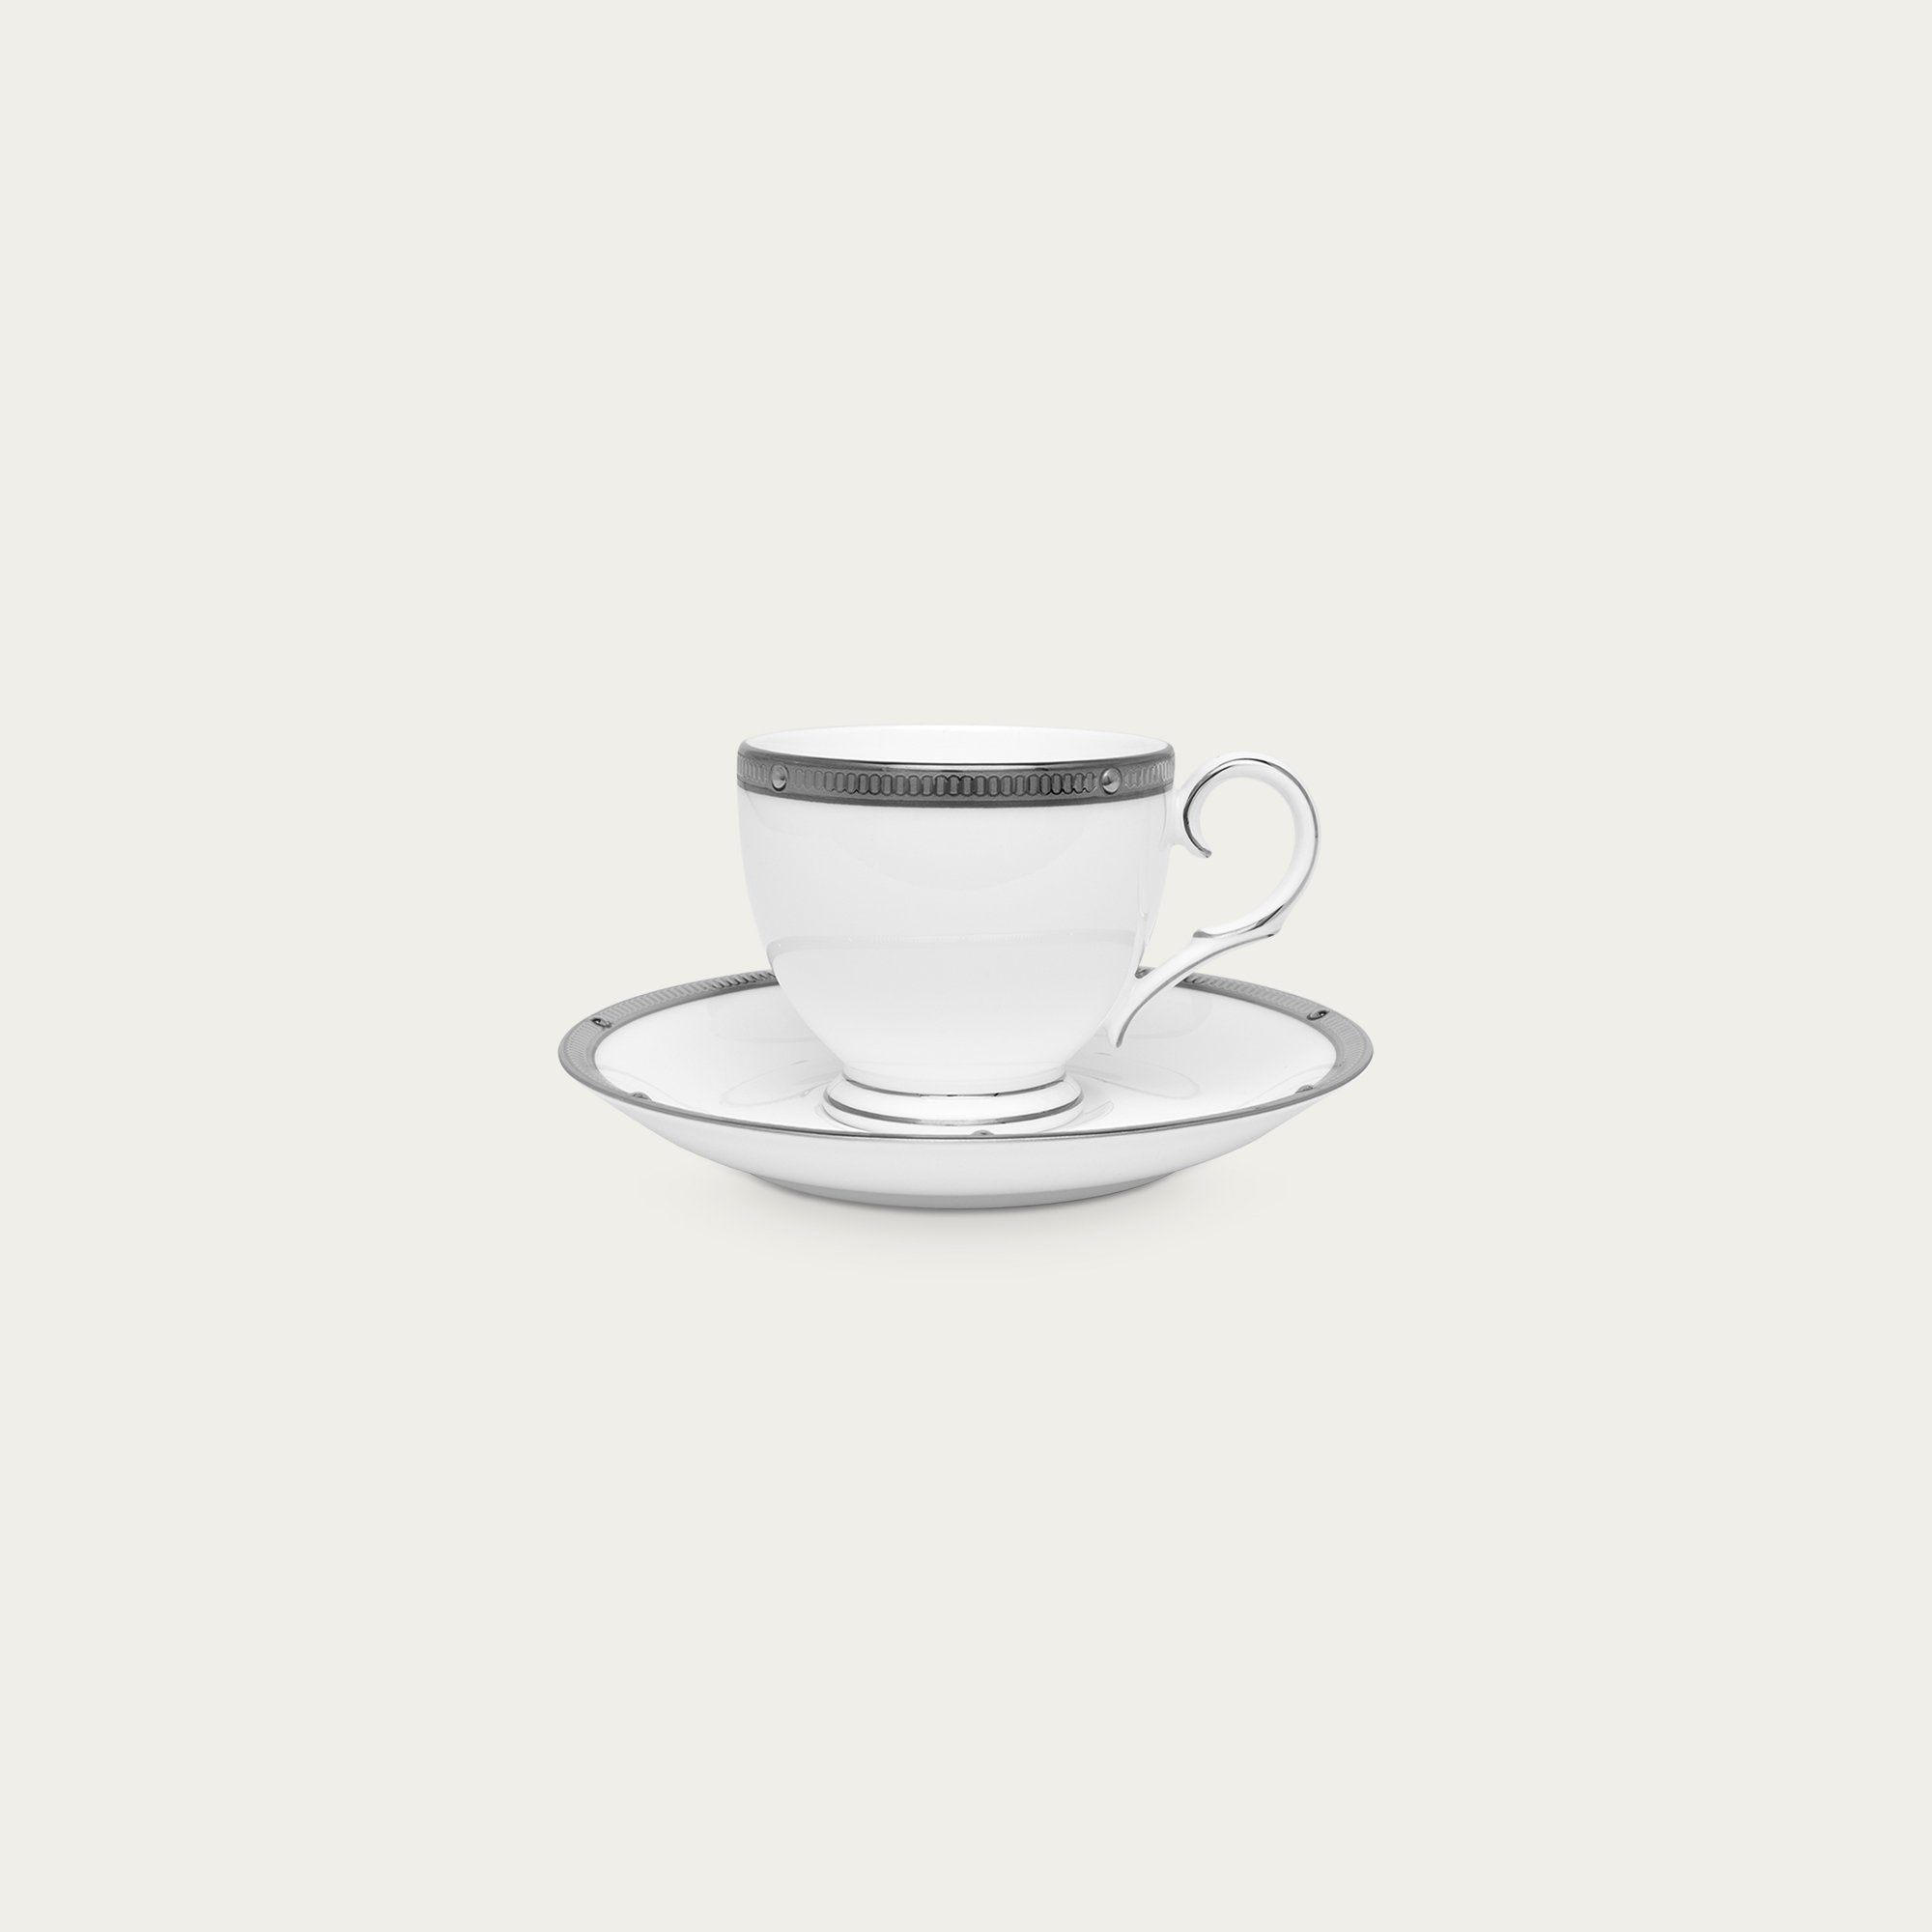  Chén trà (tách trà) nhỏ 105ml kèm đĩa lót | Rochelle Platinum 4795L-T50792A 